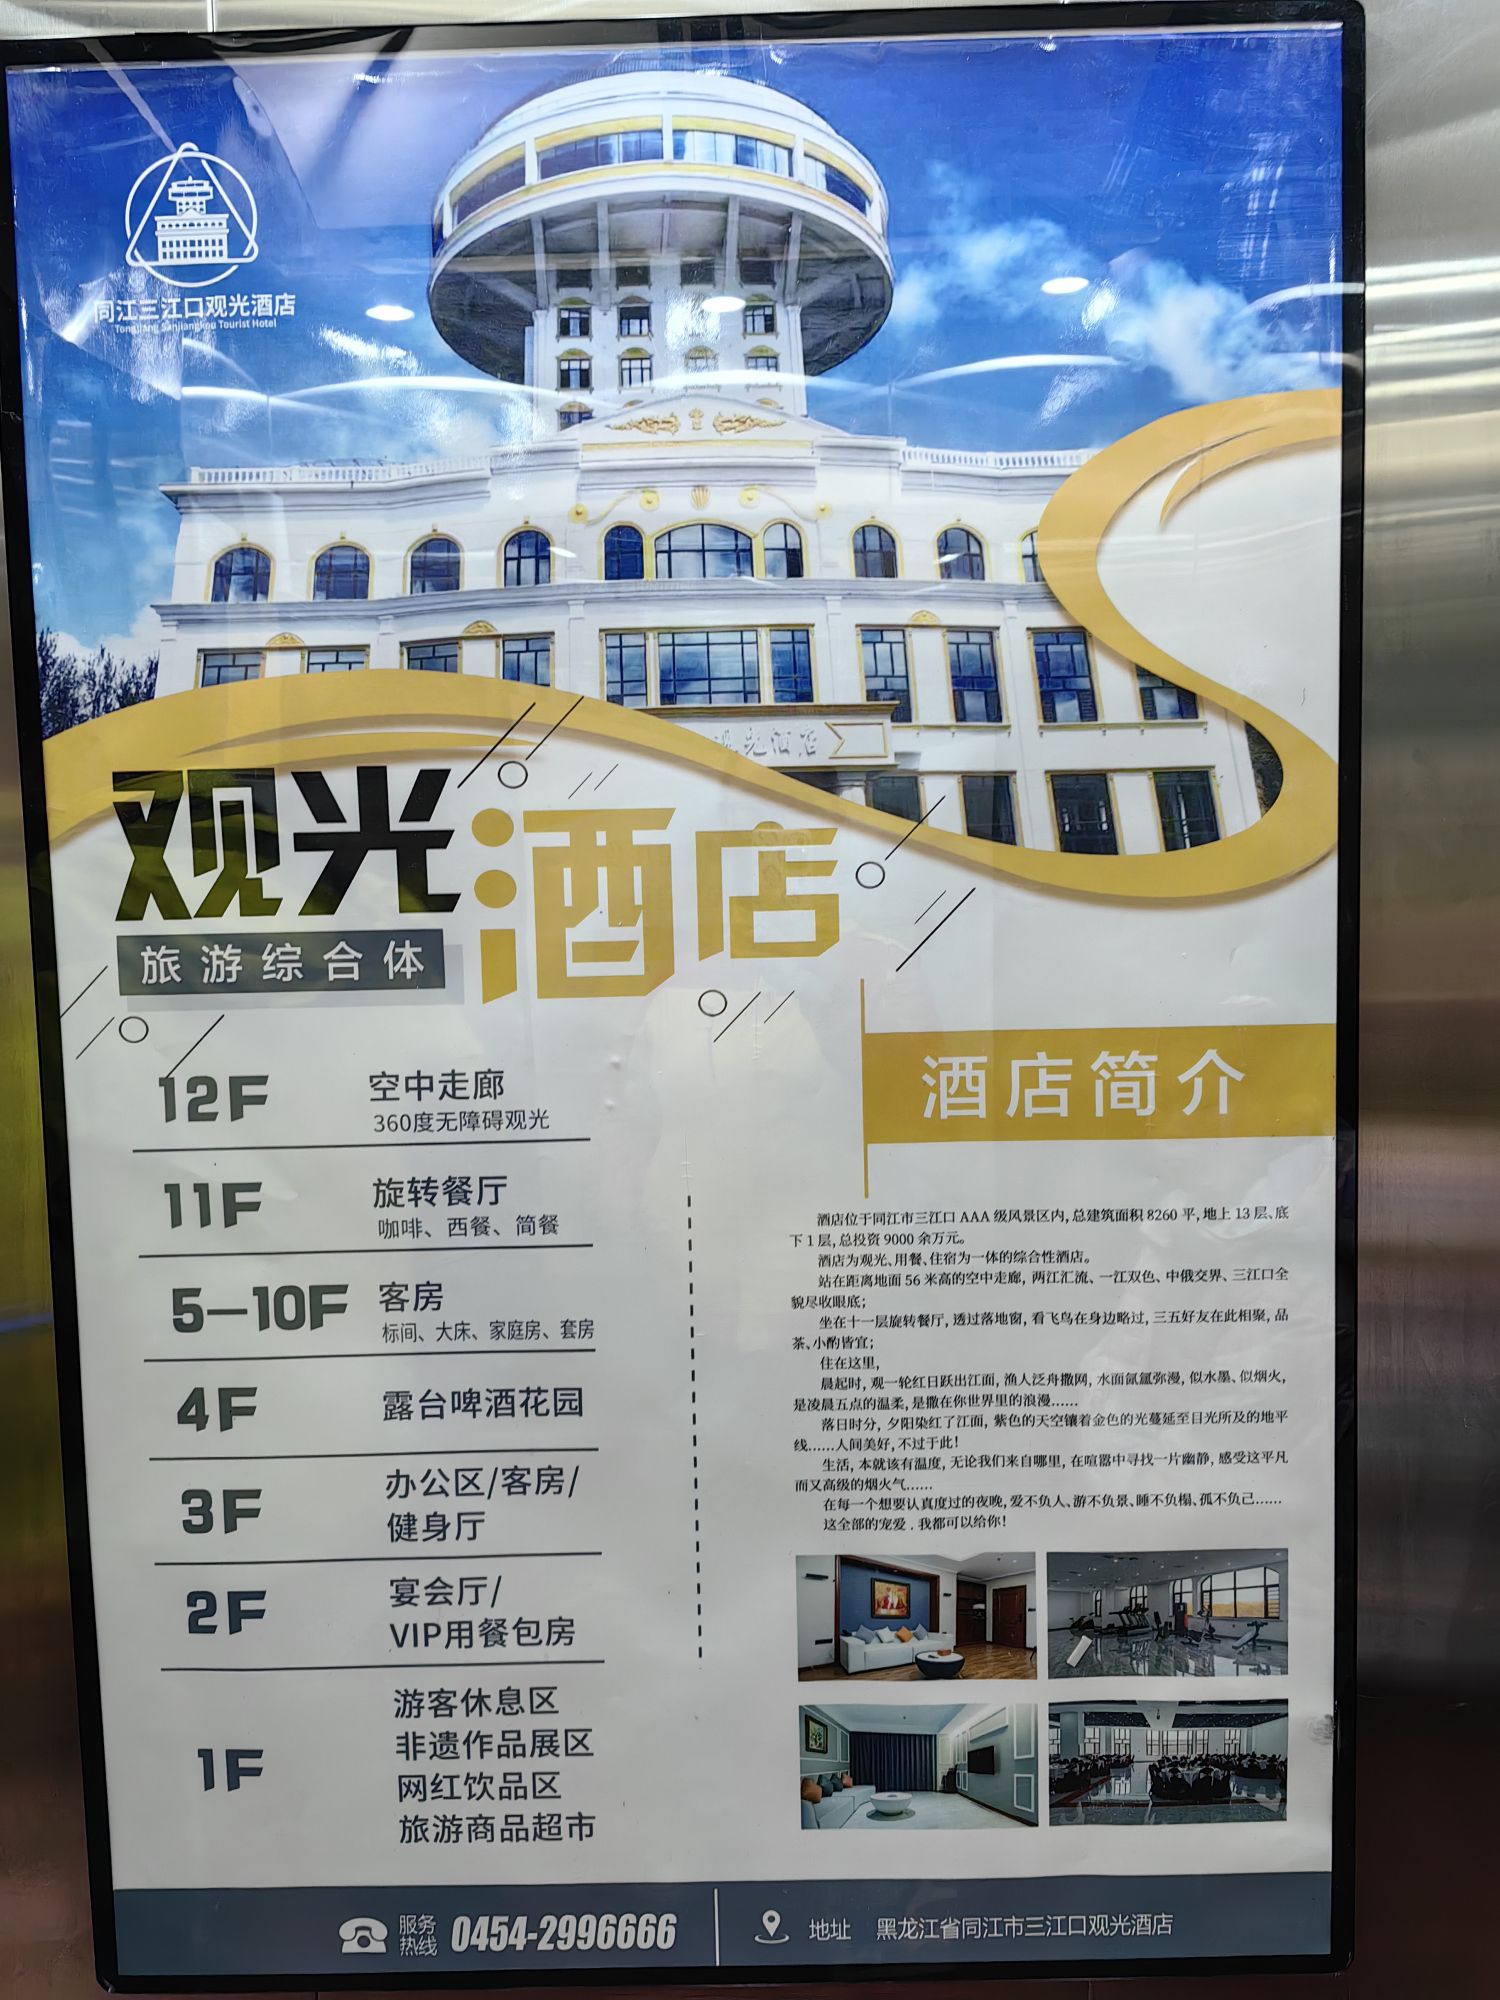 酒店位置非常好，就在三江口，可以说看日落日出的首选酒店。 入住的客人可以免费到顶层，只是日出只能开放